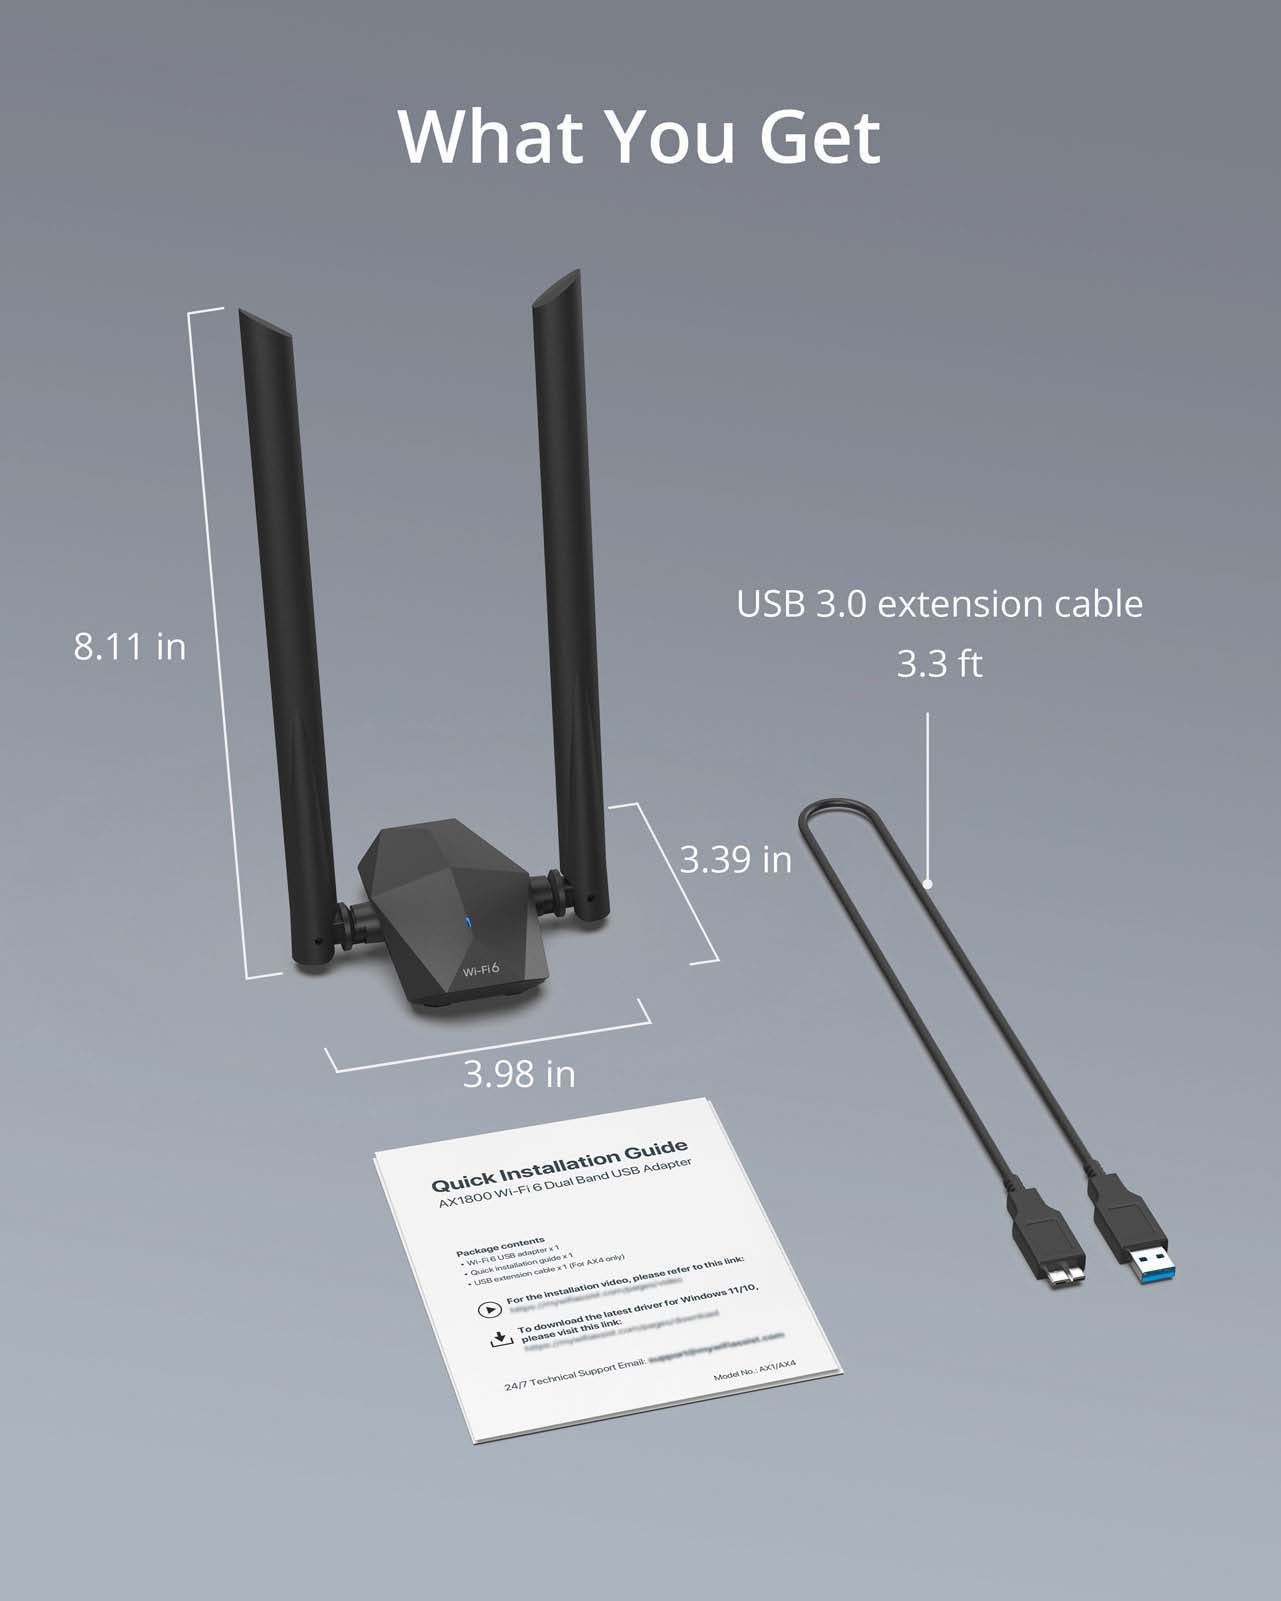 USB 3.0 AX1800 Wifi6 Adapter 2.4GHz5GHz Dual Band USB Wireless